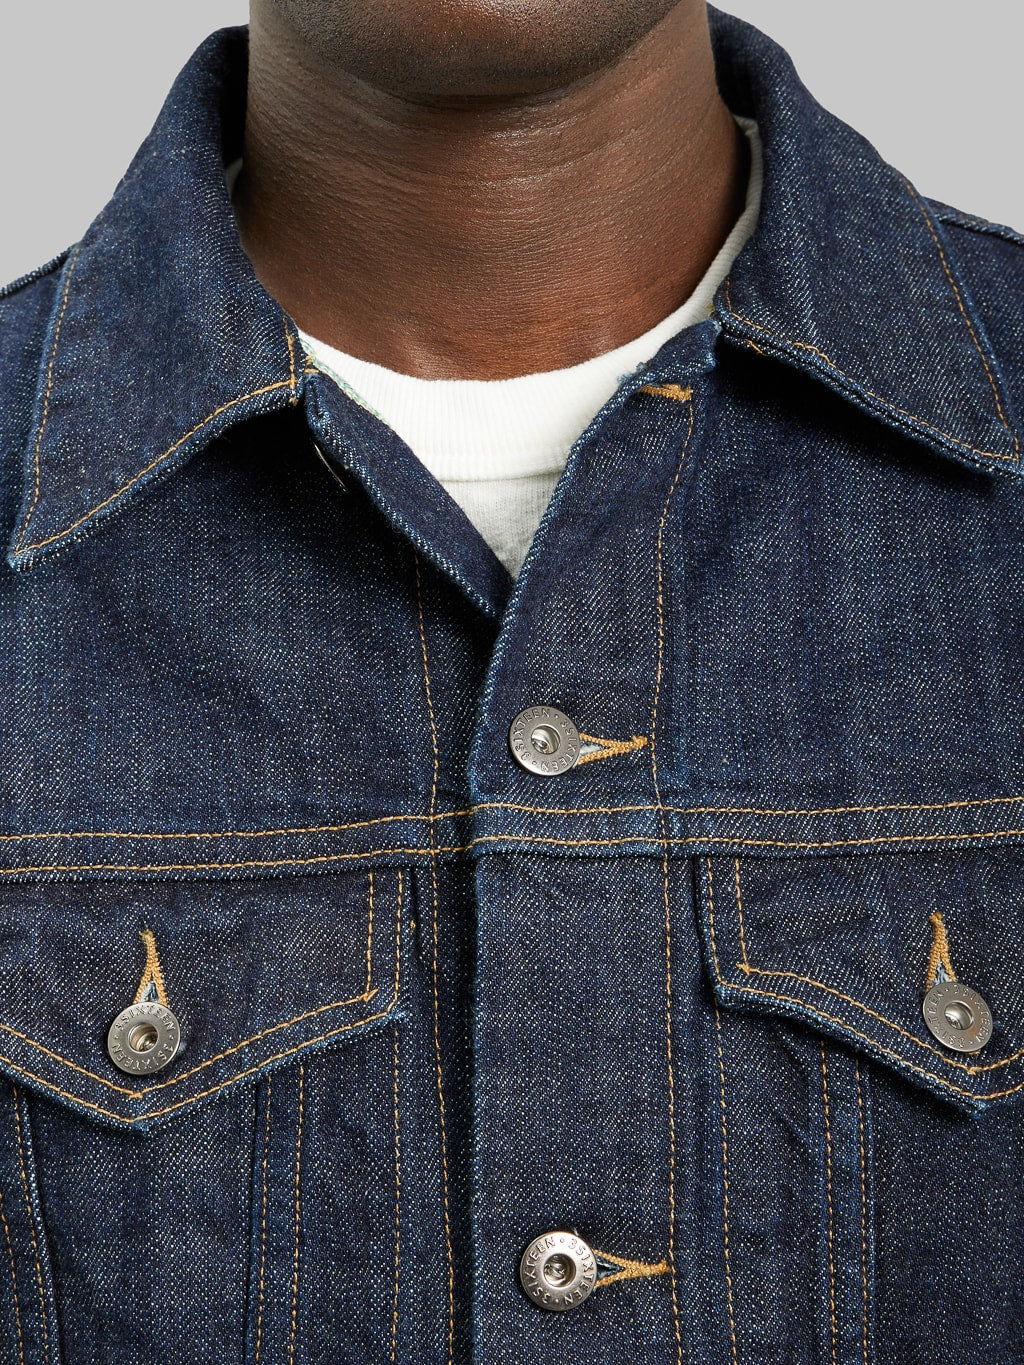 3sixteen 20th Anniversary Burkina Faso Type 3s Denim Jacket chest